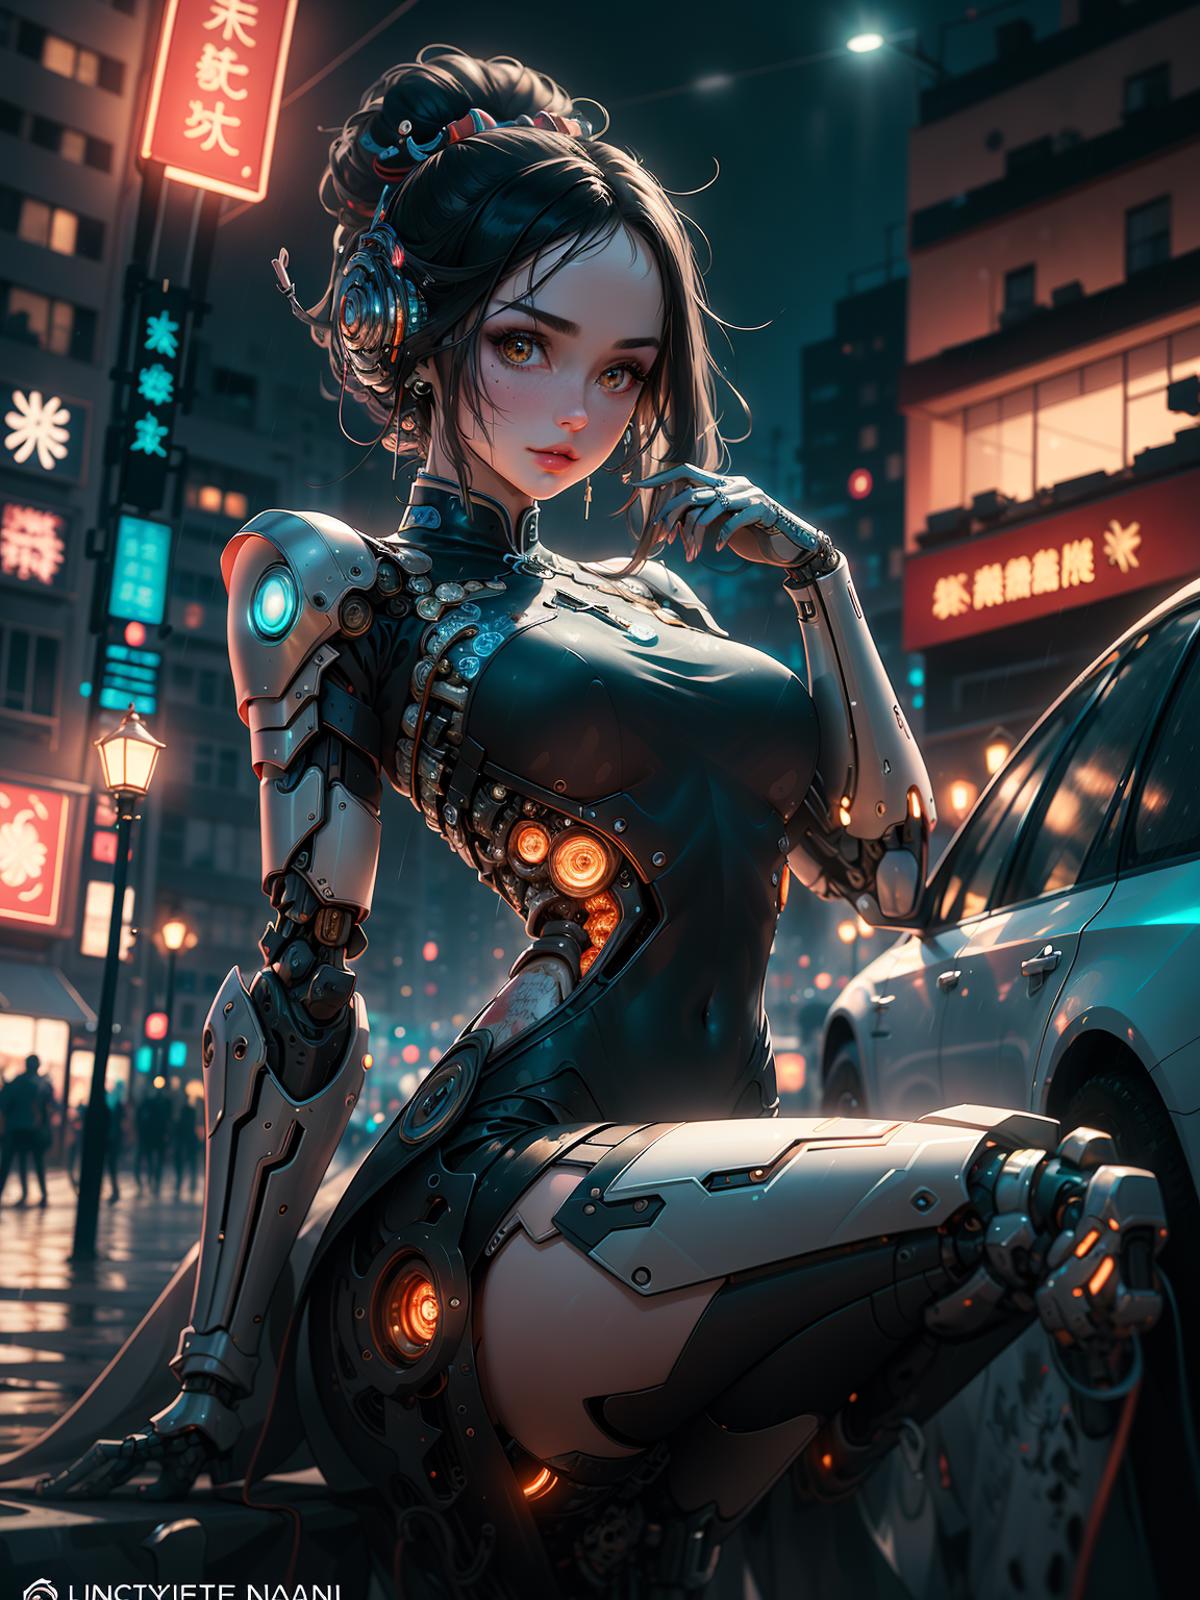 Cyberhanfu 赛博国风/Cyber Chinese style image by kokumi